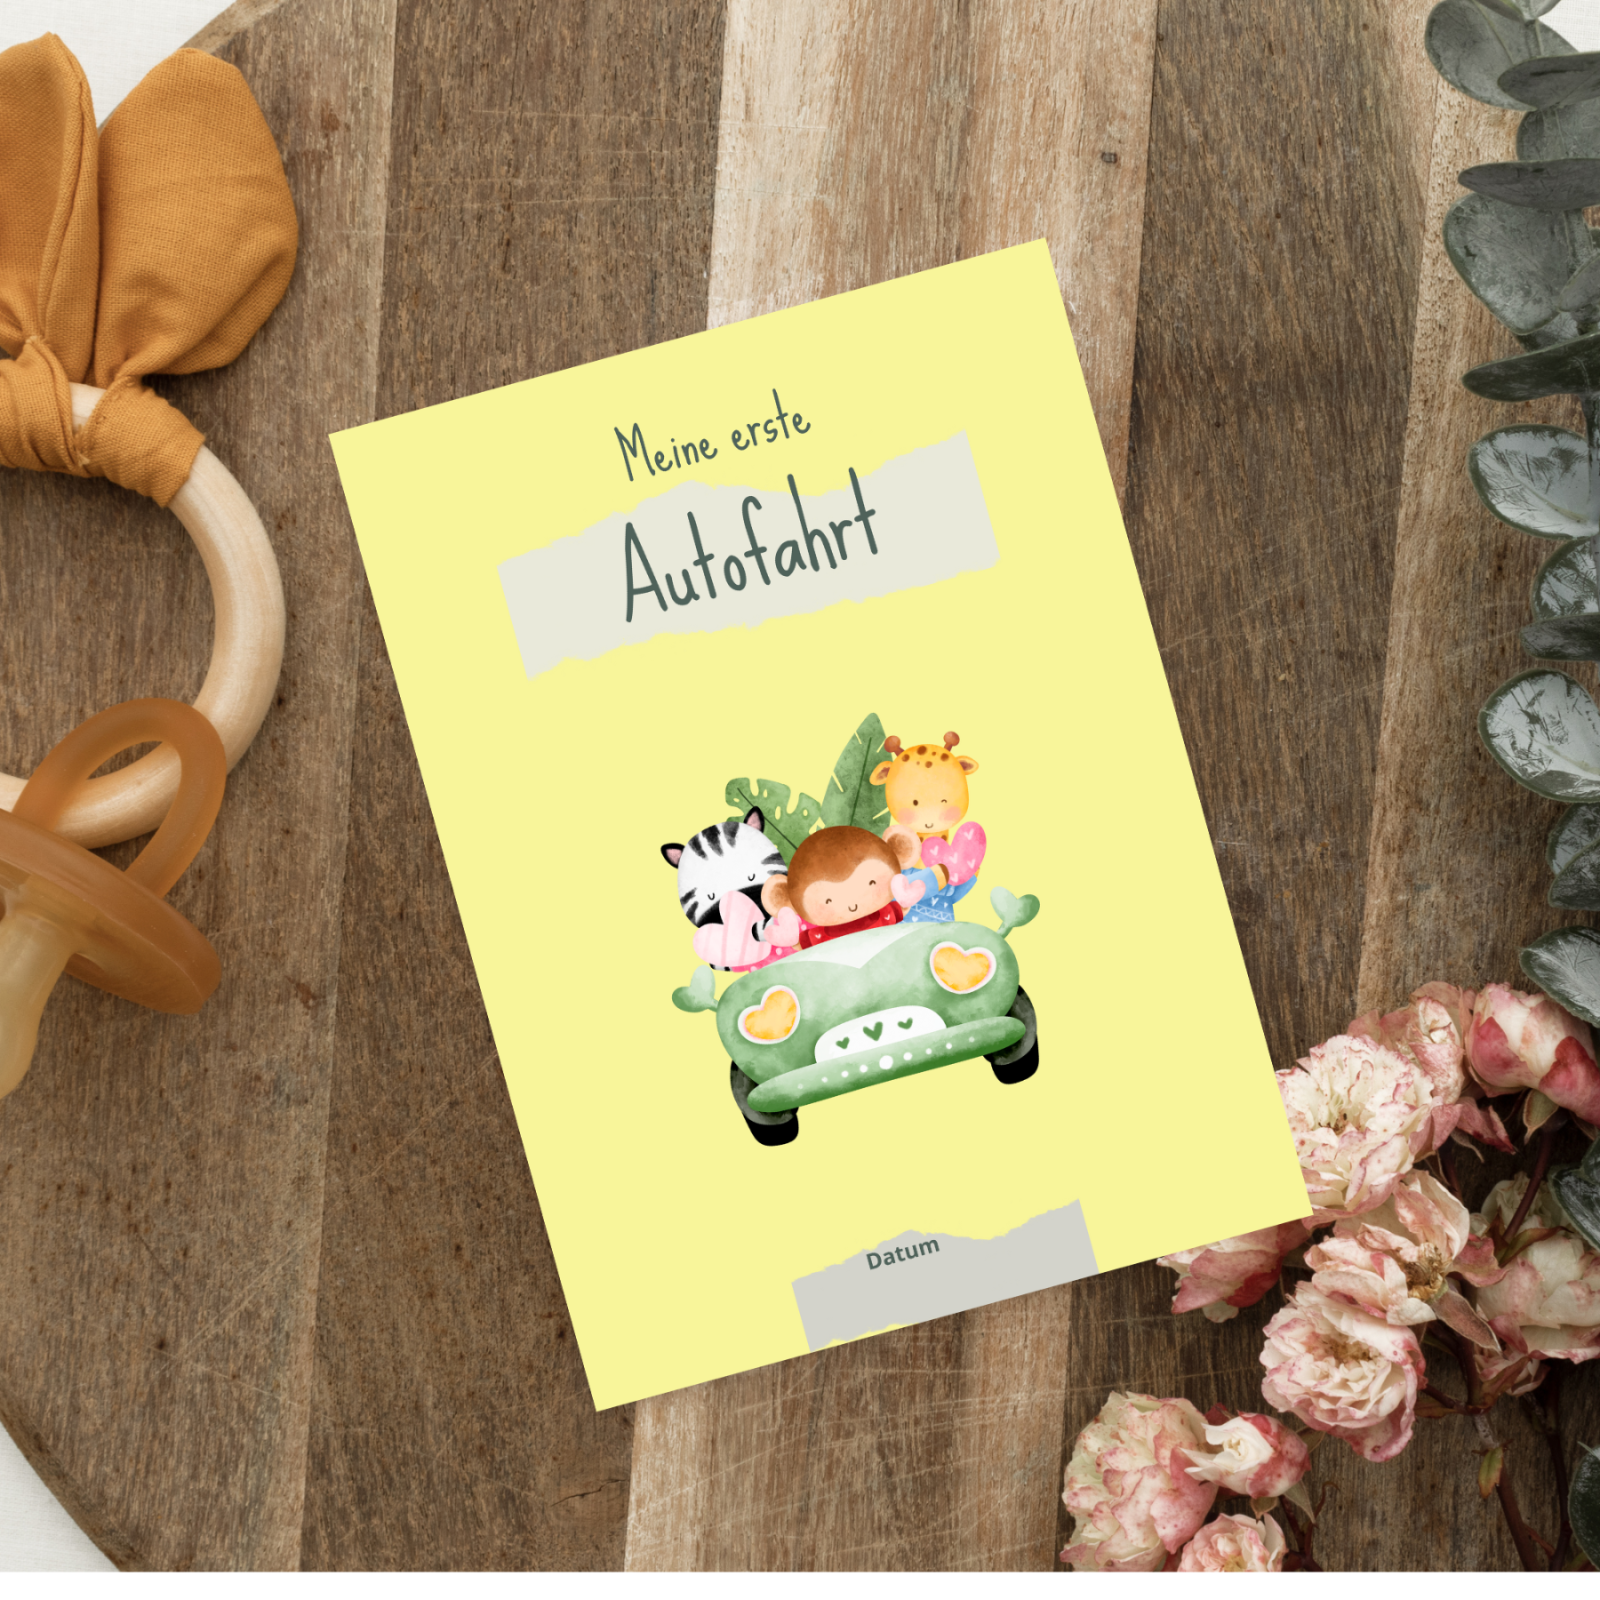 Meilensteinkarten für das erste Babyjahr - Digitale Datei zum Download 36 Karten 7 blanko Karten